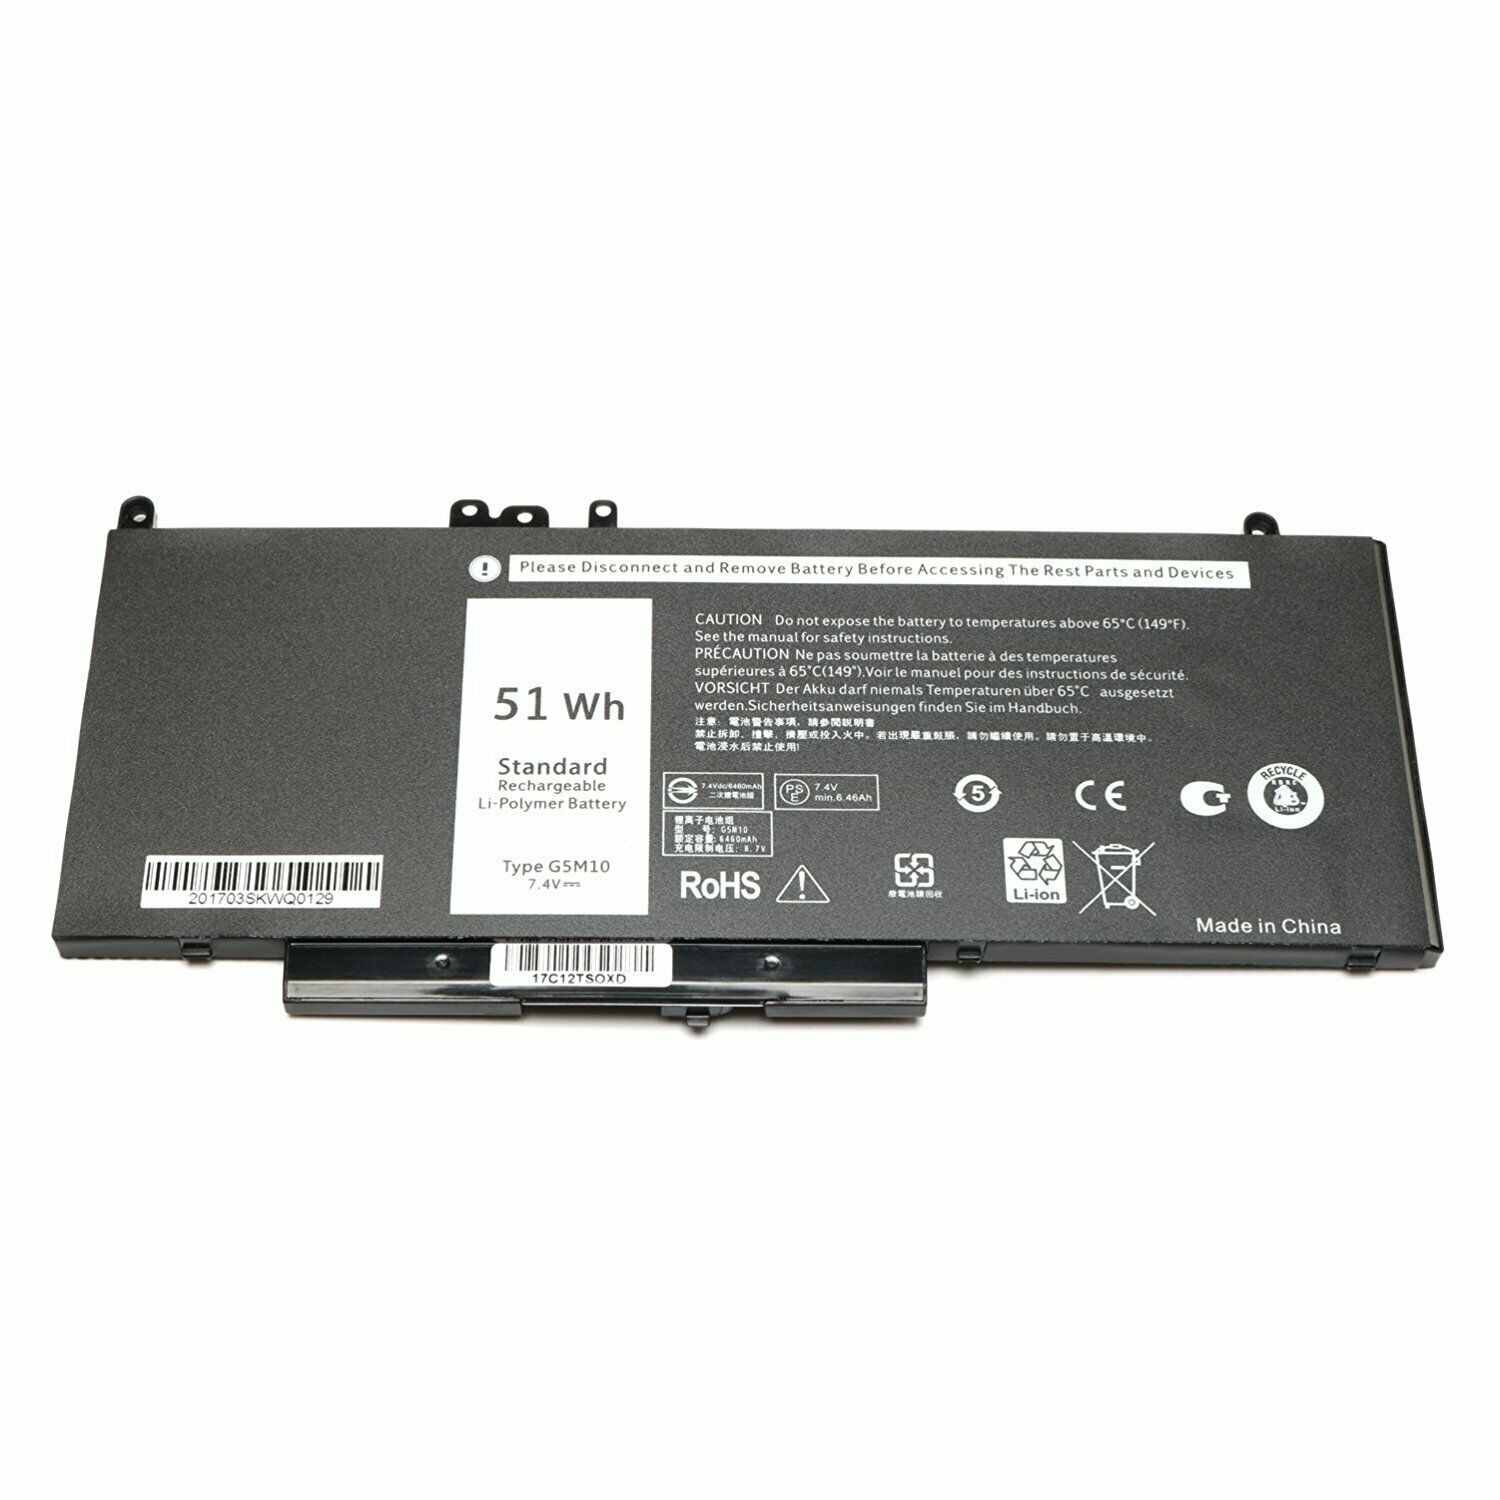 G5M10 WYJC2 1KY05 Dell Latitude E5450 E5470 E5550 E5570 kompatybilny bateria - Kliknij obrazek, aby zamkn±æ